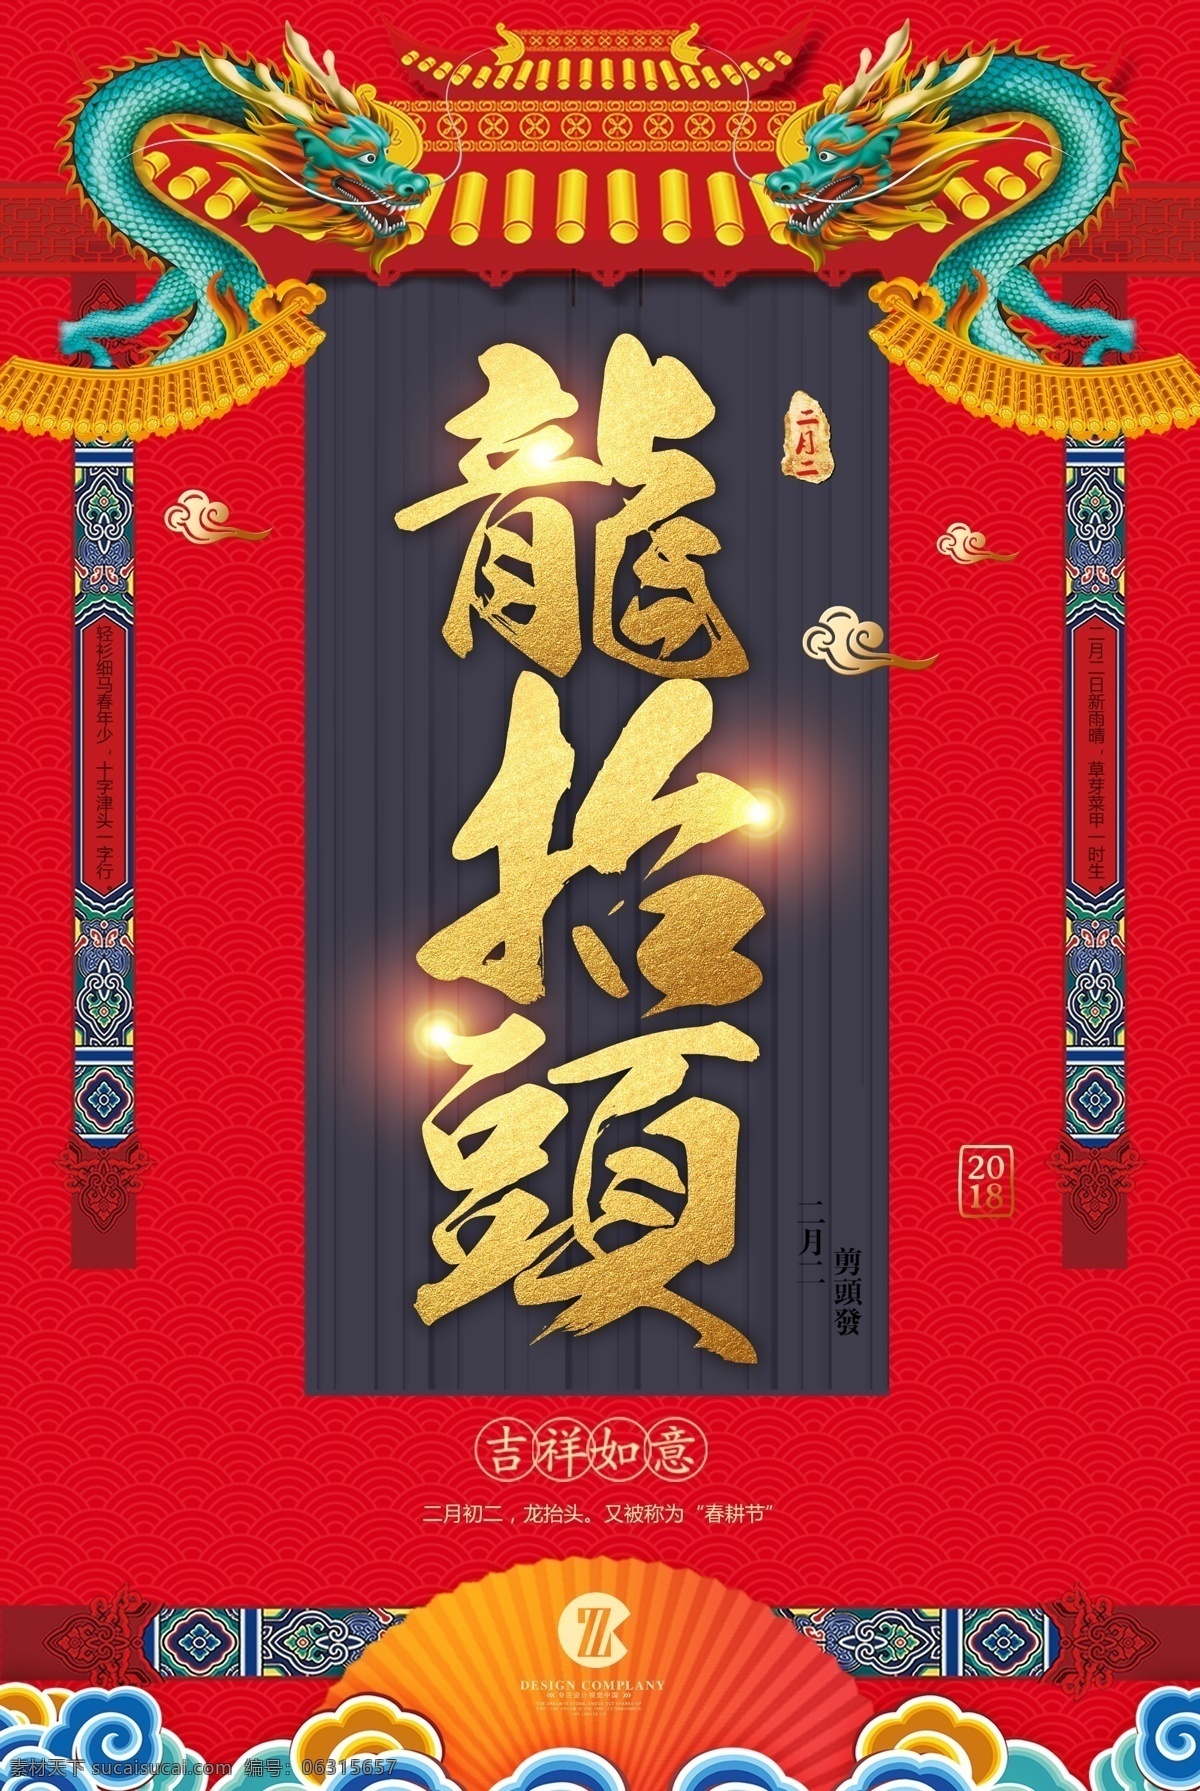 传统 中国 风 二月 初二 龙 抬头 海报 背景 中国风背景 背景海报 创意背景 背景素材 红色背景 背景设计 龙抬头背景 psd海报